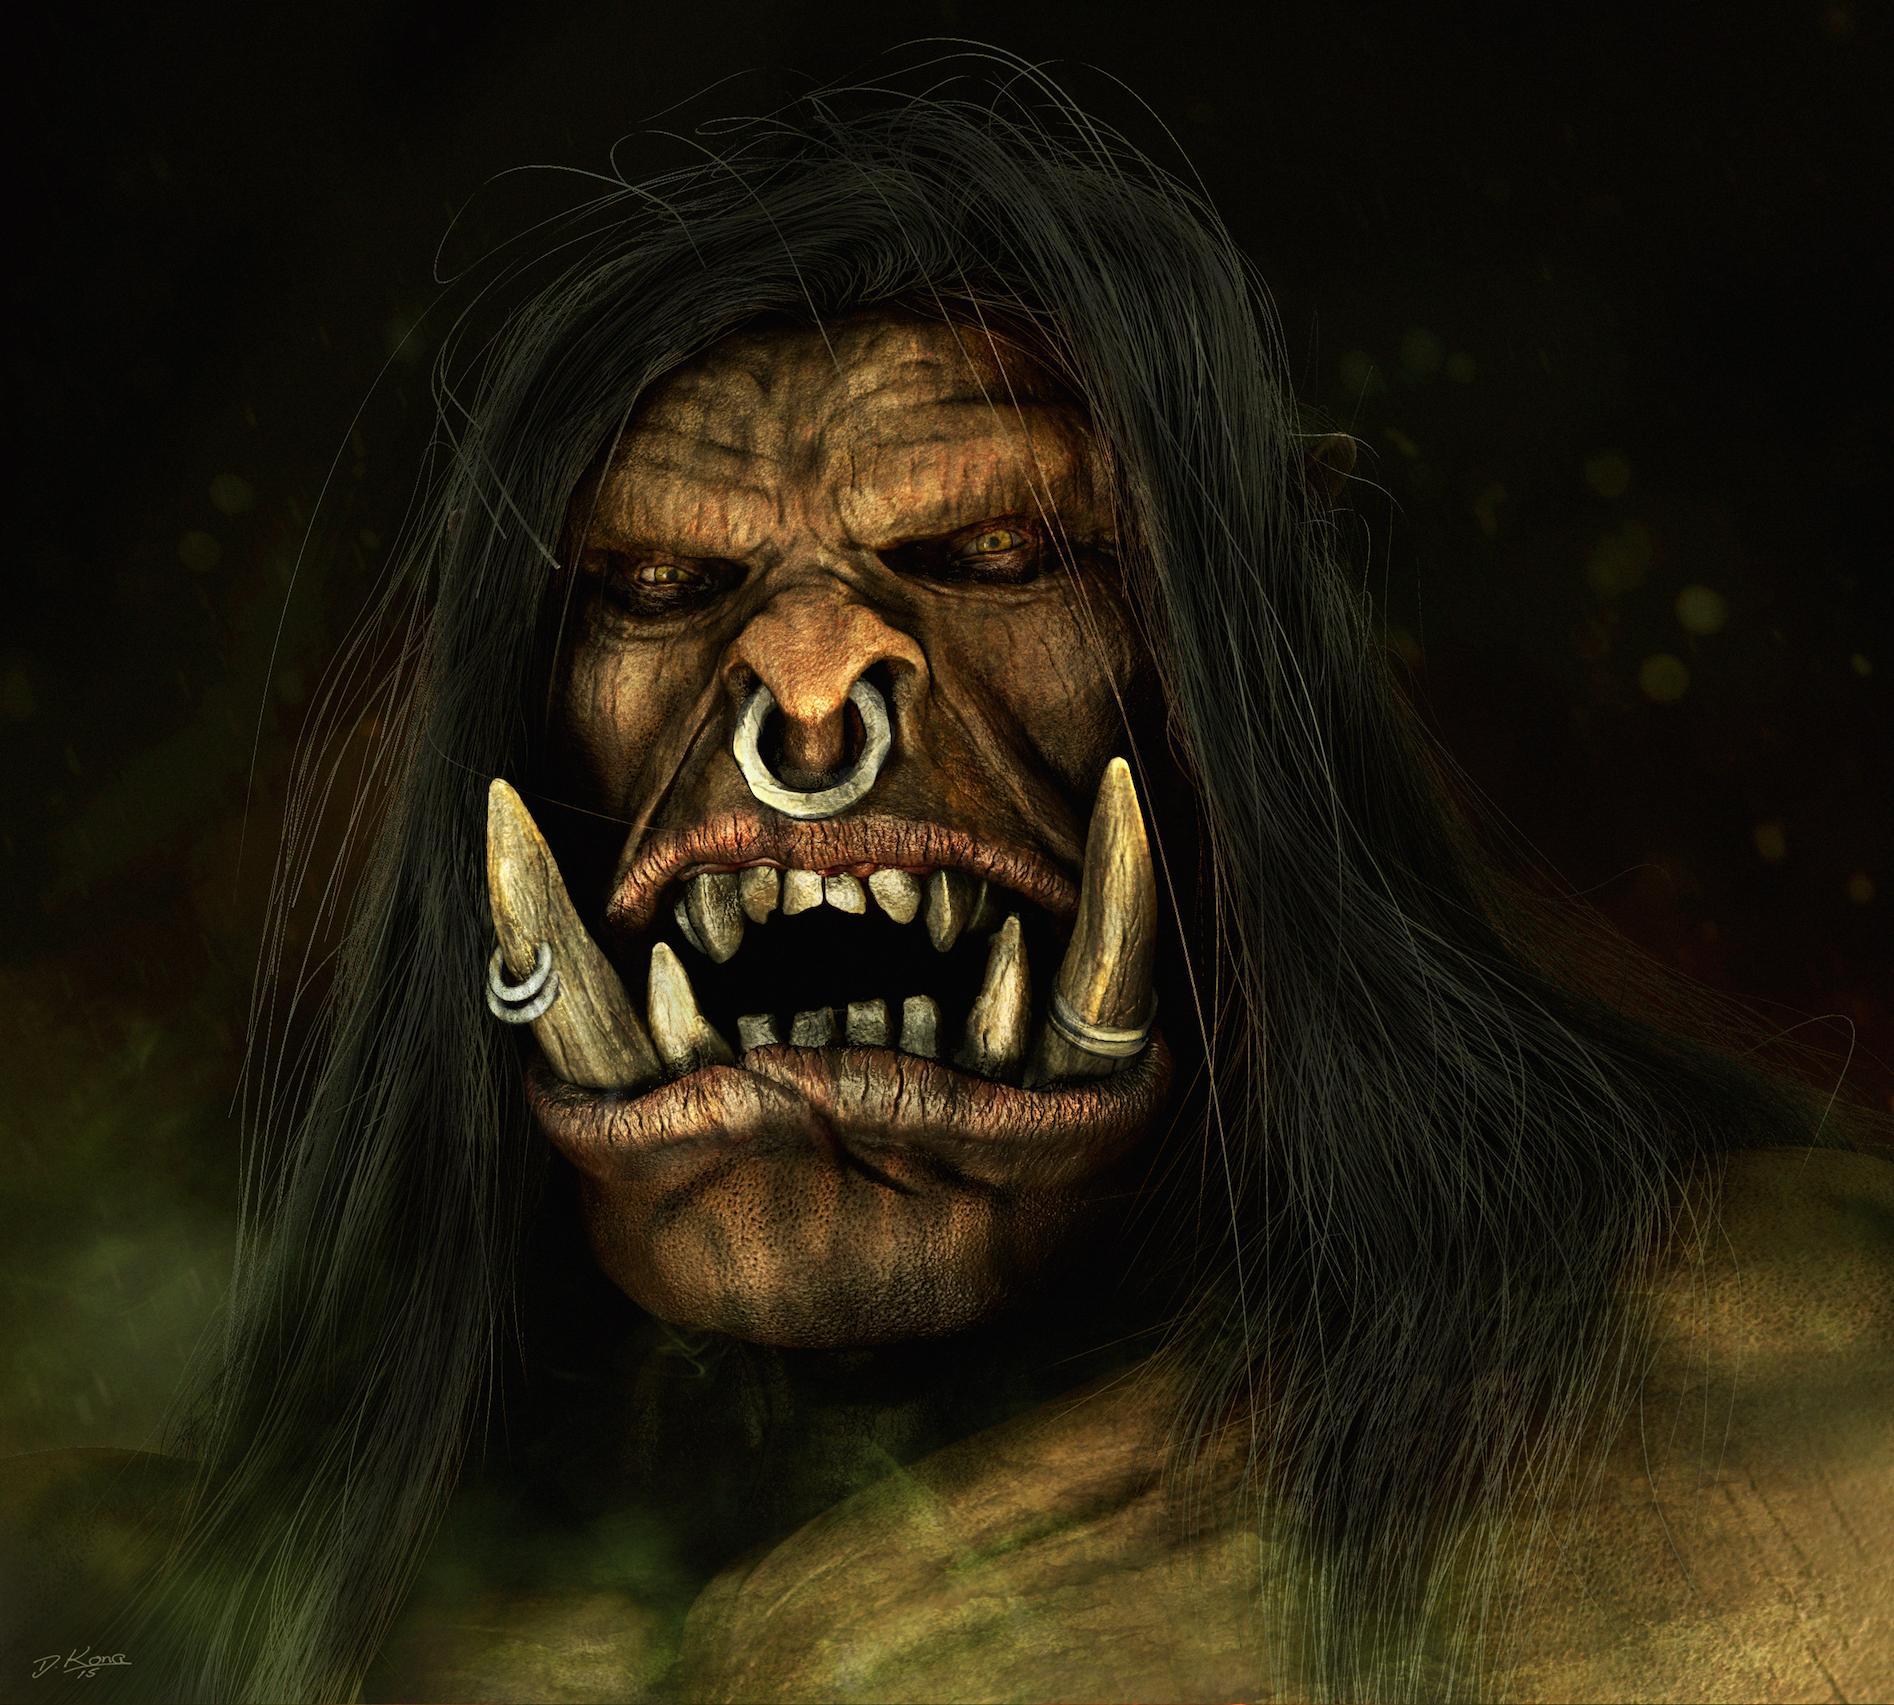 魔兽国外玩家原创3D同人图:面目狰狞的格罗玛